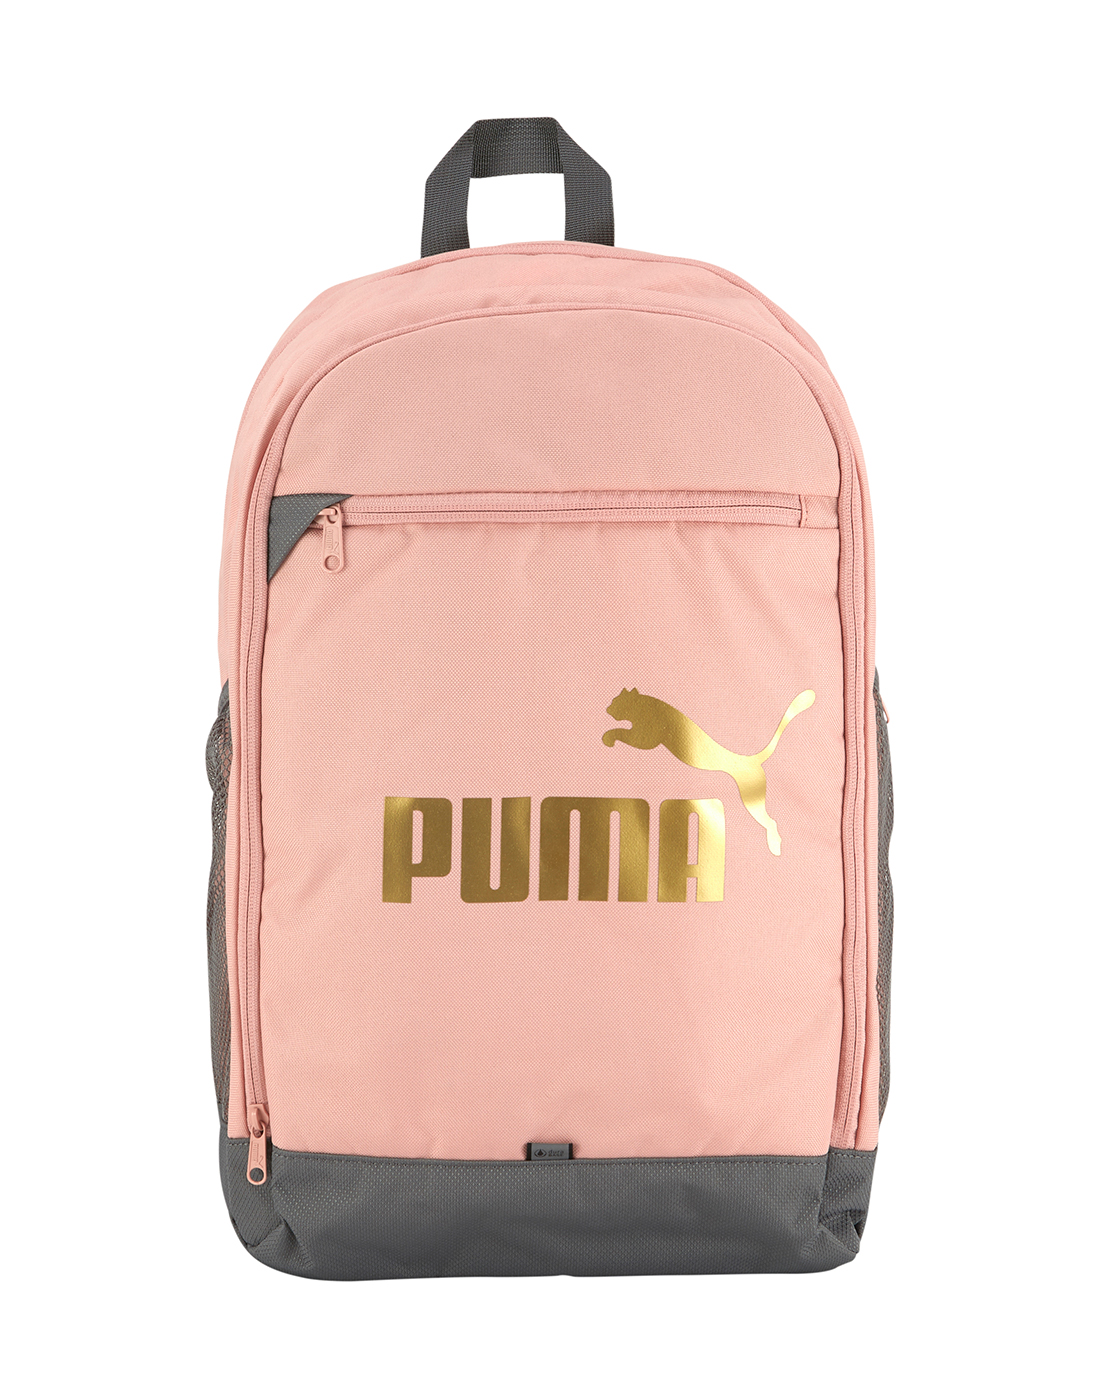 puma rose gold bag